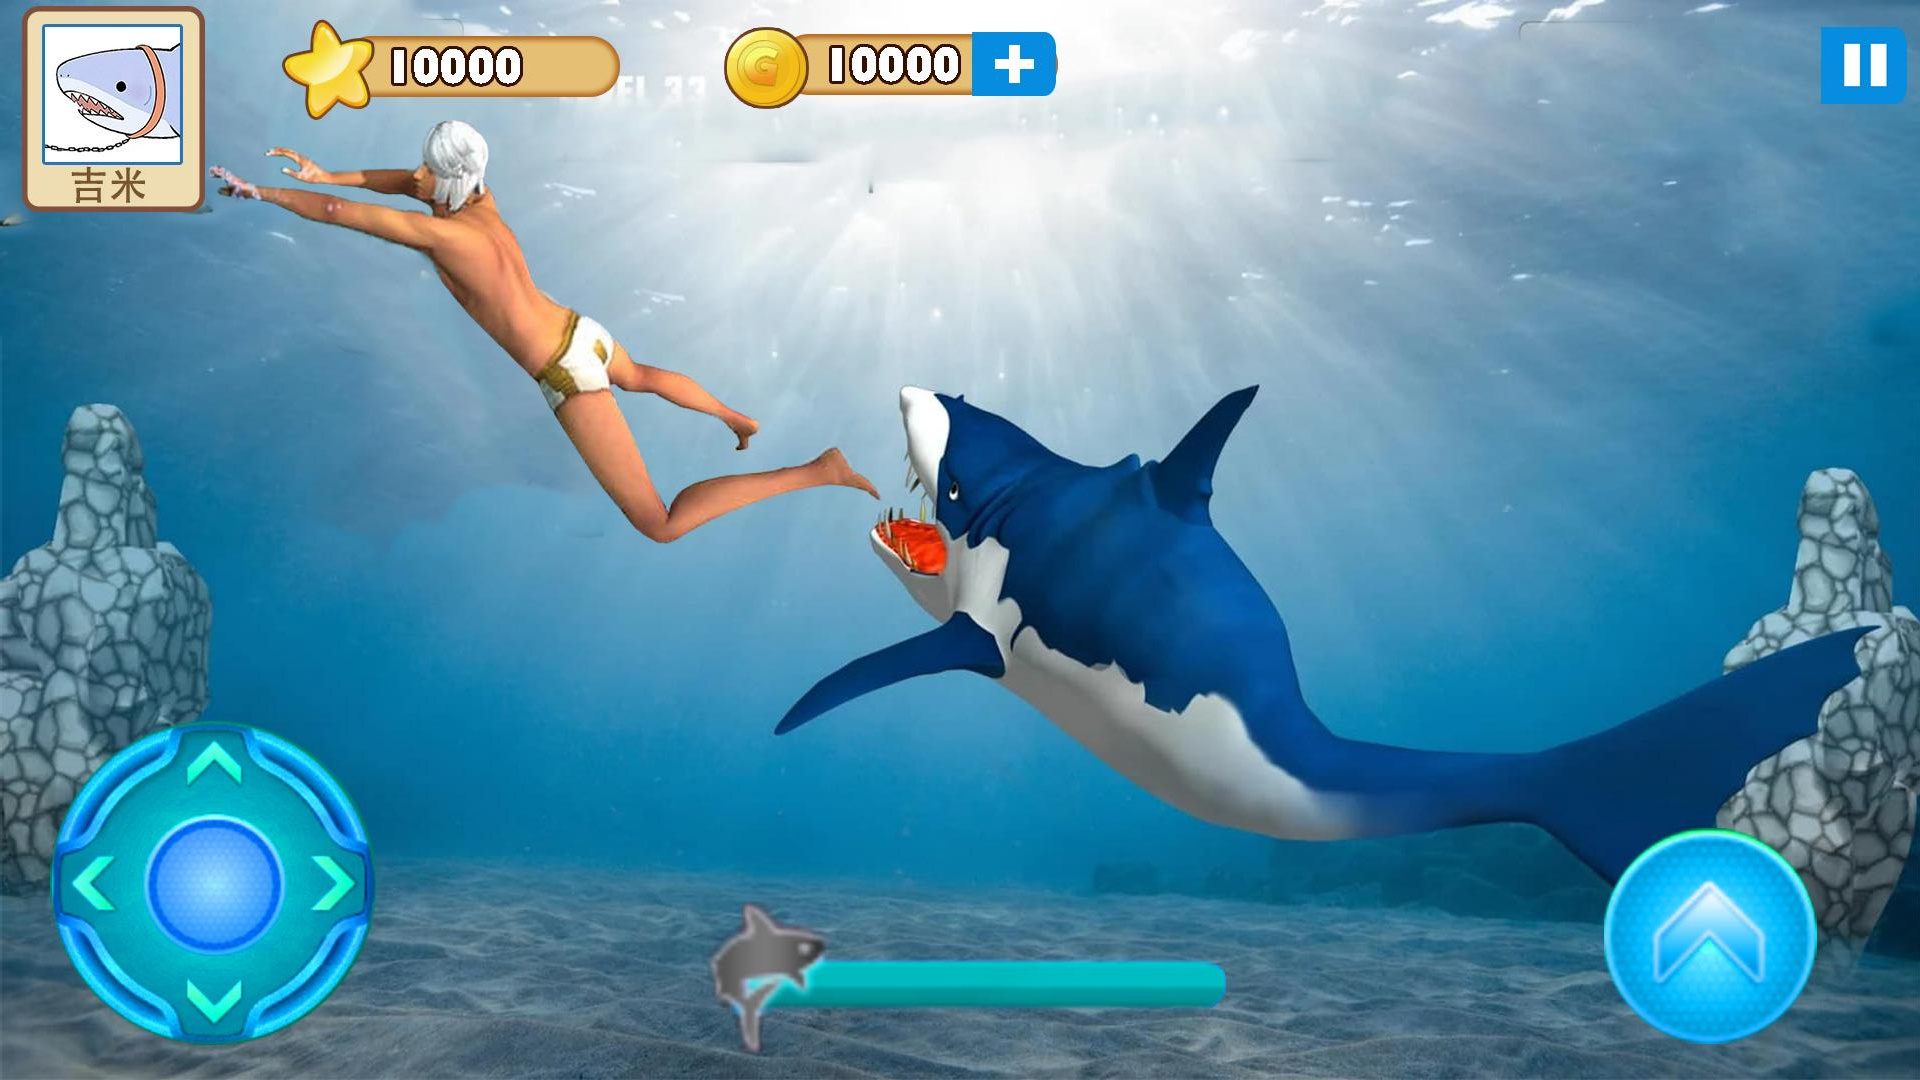 大白鲨真实模拟安卓版 V1.0